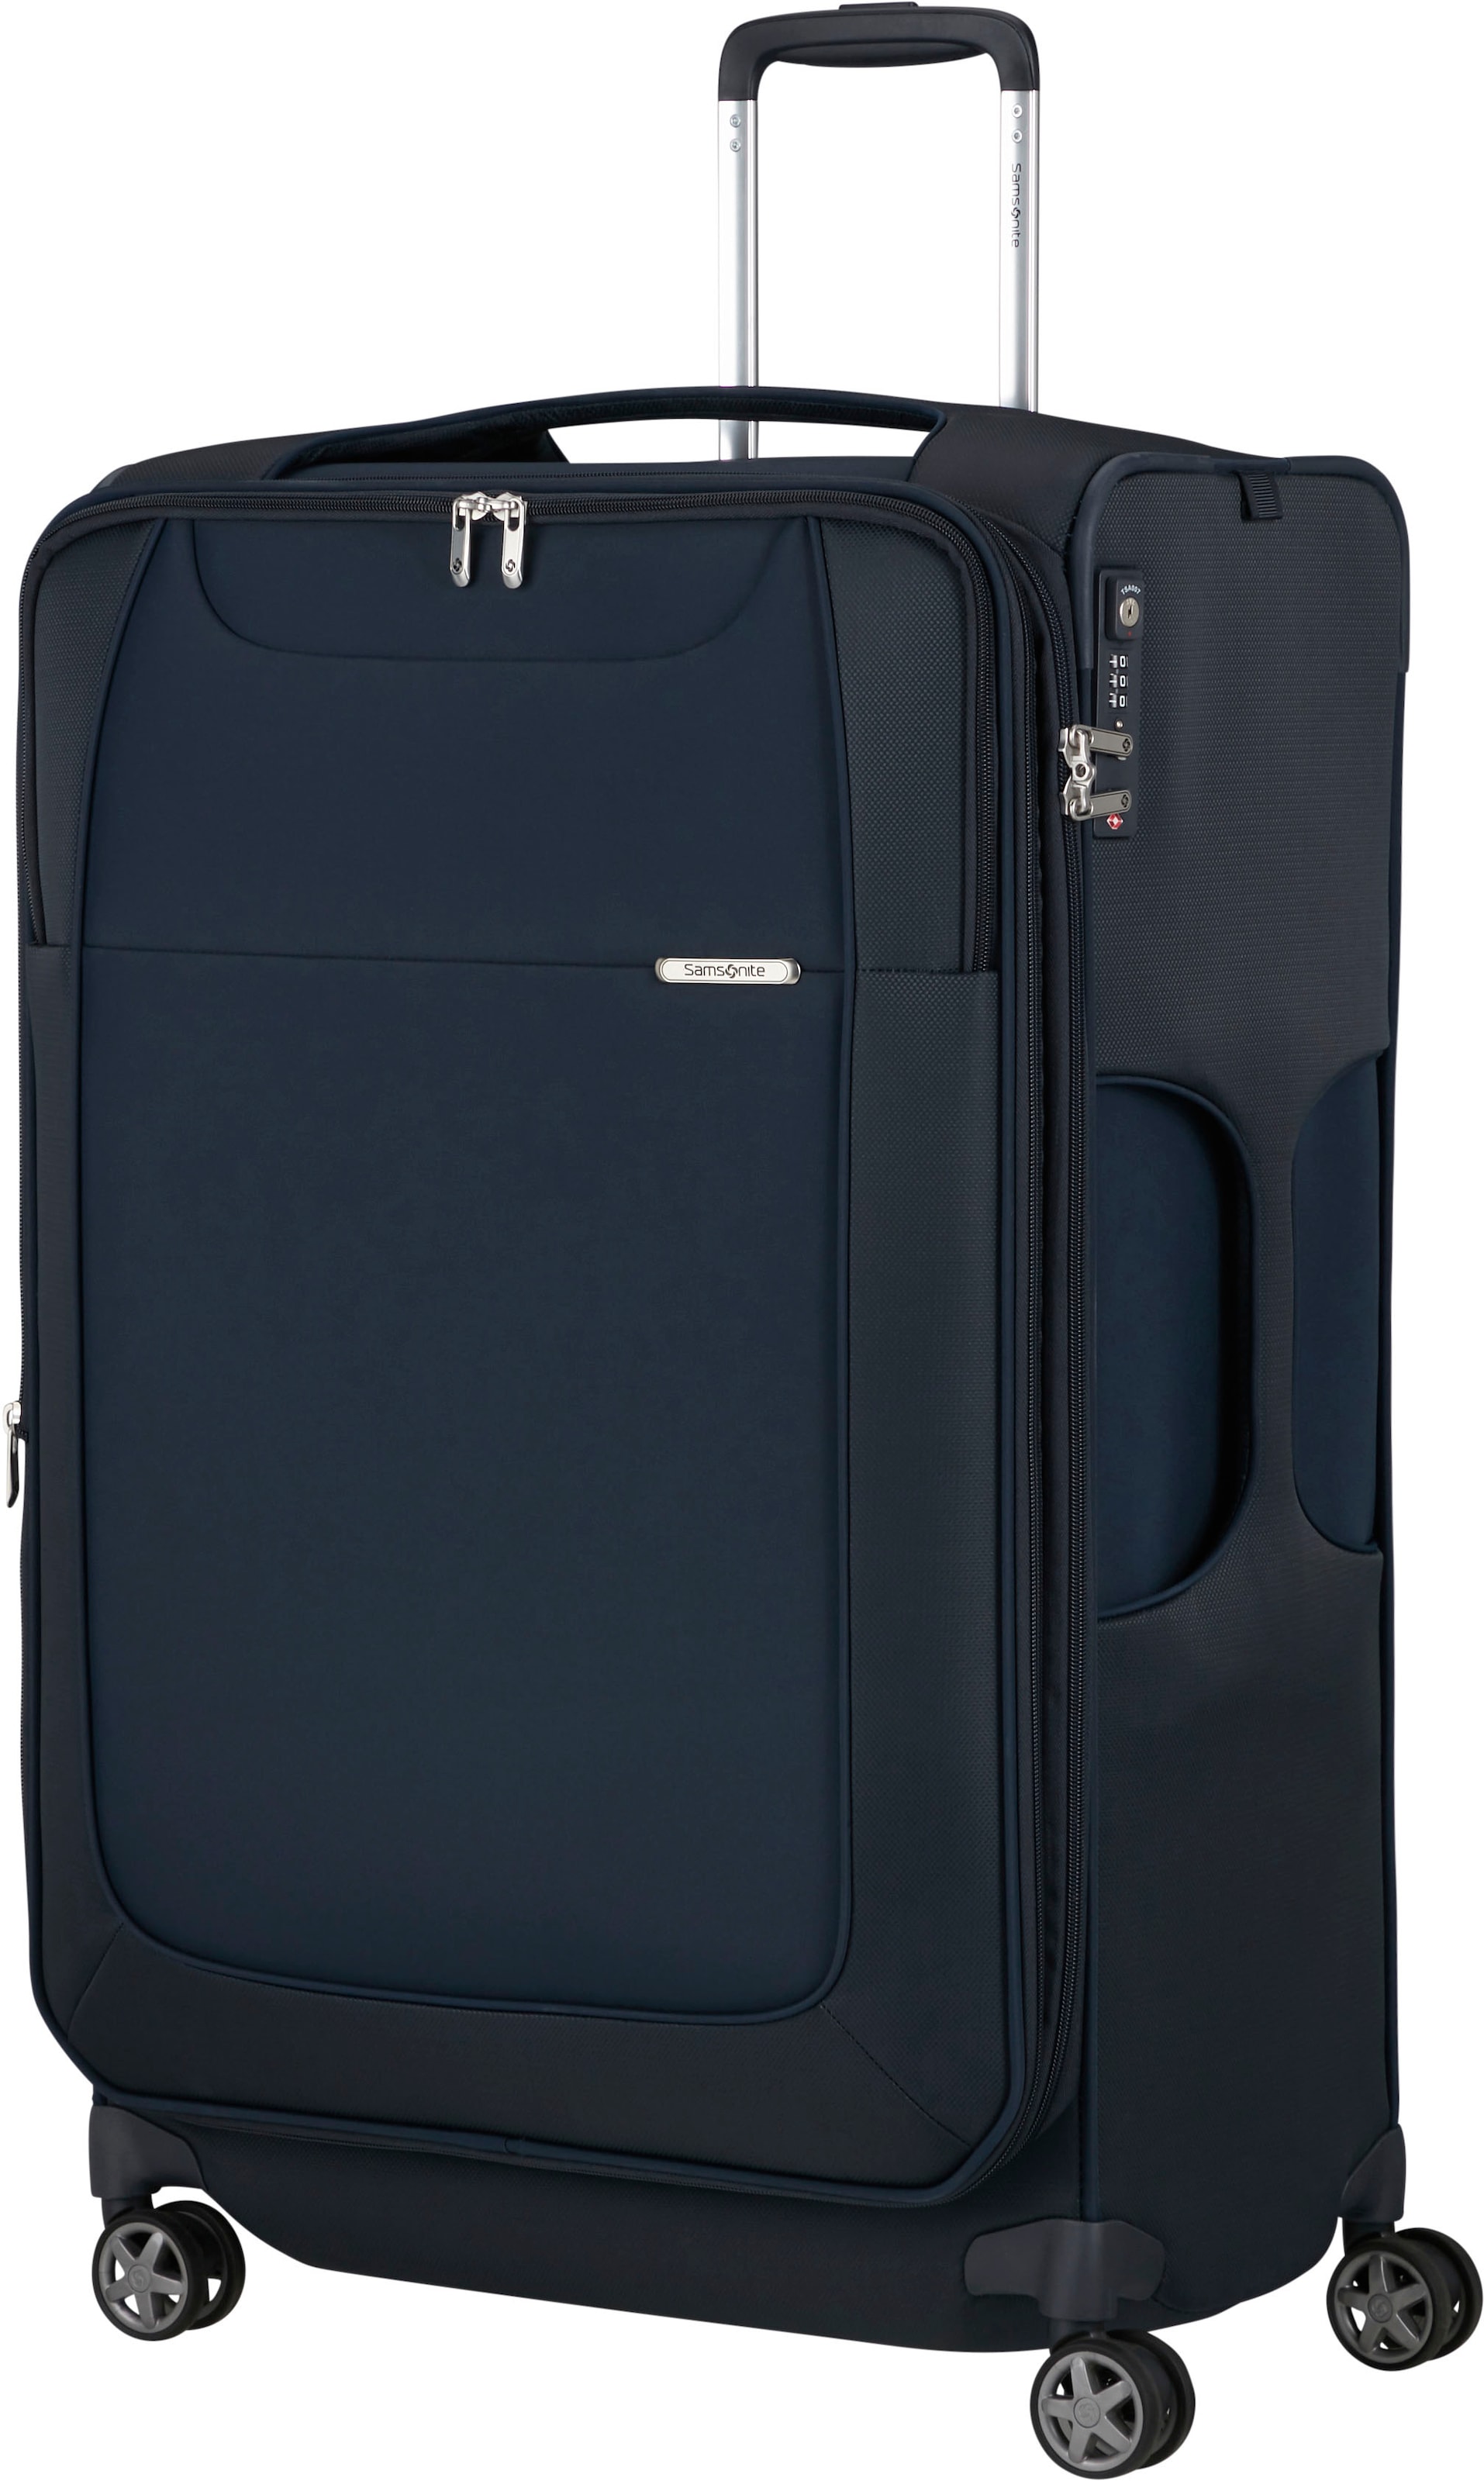 Samsonite Weichgepäck-Trolley »D'Lite, Midnight Blue, 78 cm«, 4 Rollen, Reisekoffer Großer Koffer Aufgabegepäck Volumenerweiterung